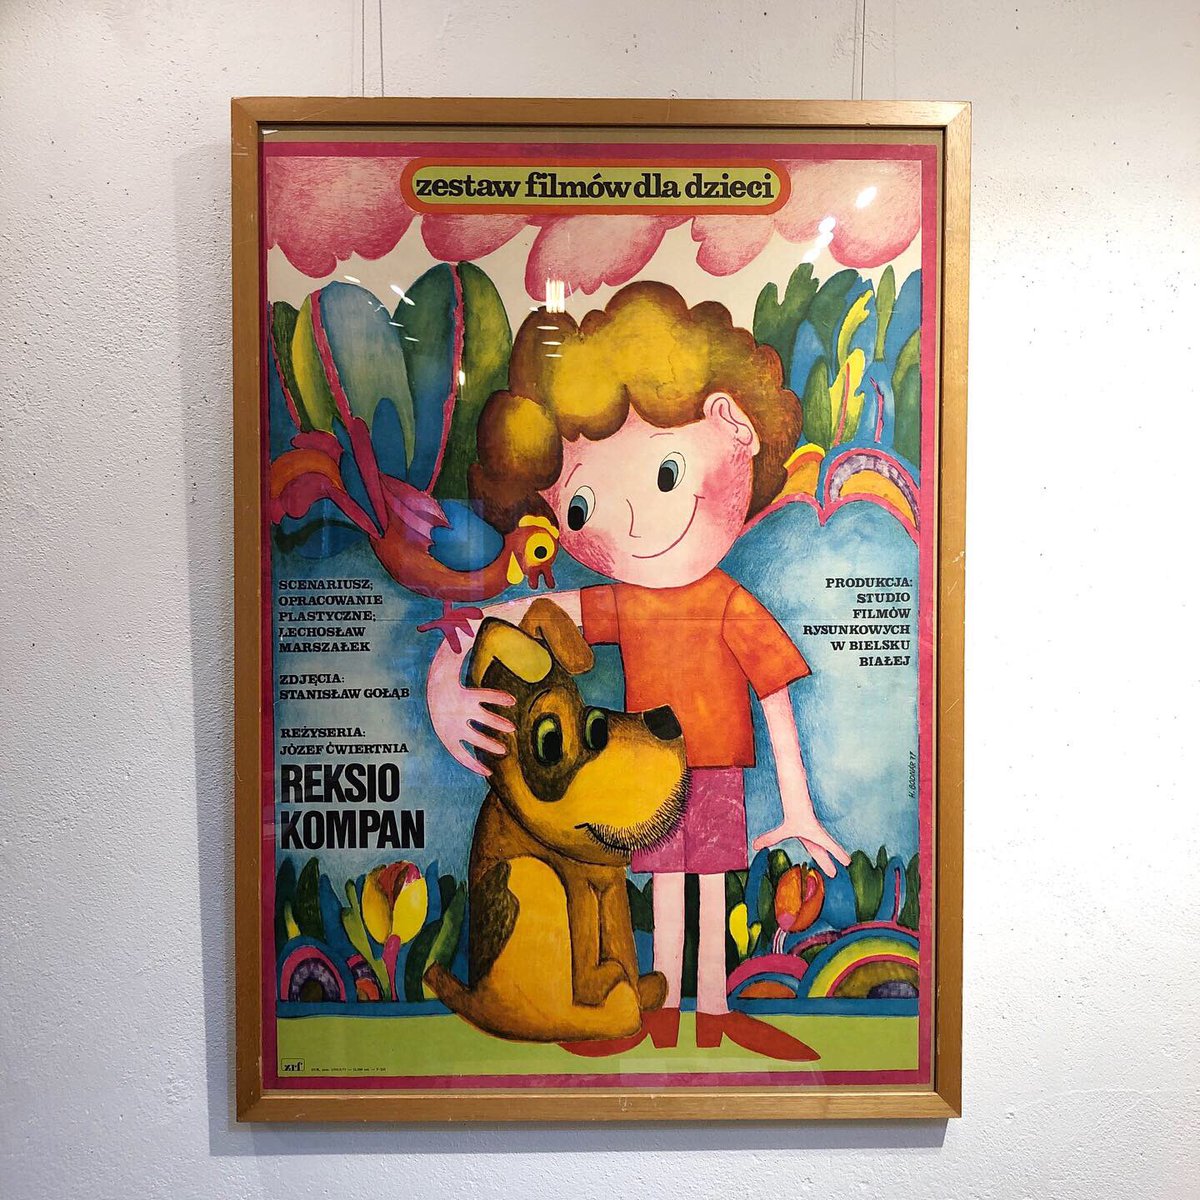 Uresica ウレシカ Reksio Kompan ポーランドの人気キャラ 犬のレクシオが活躍するアニメーション 映画1977年公開時のポスター 実際のアニメ画像を使わず描き下ろしたイラストを使うのがポーランドポスター流です ハッピーな色づかいの可愛いイラスト